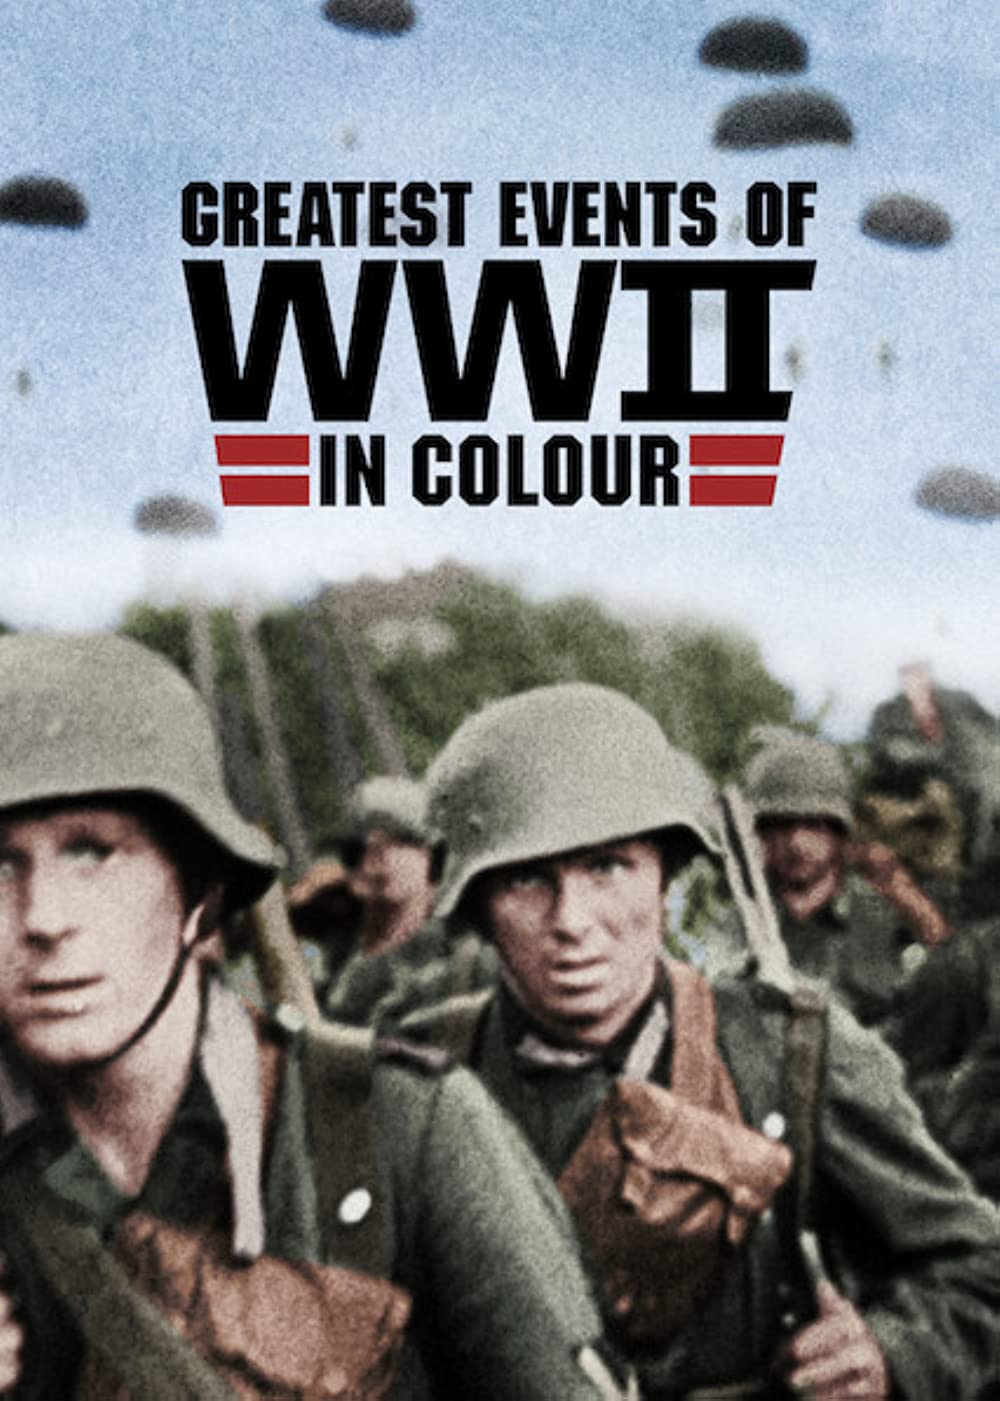 ดูหนังออนไลน์ฟรี Greatest Events of WWII in Colour (2019) EP.5 ภาพสีประวัติศาสตร์ของเหตุการณ์สำคัญช่วงสงครามโลกครั้งที่ 2 ตอนที่ 5